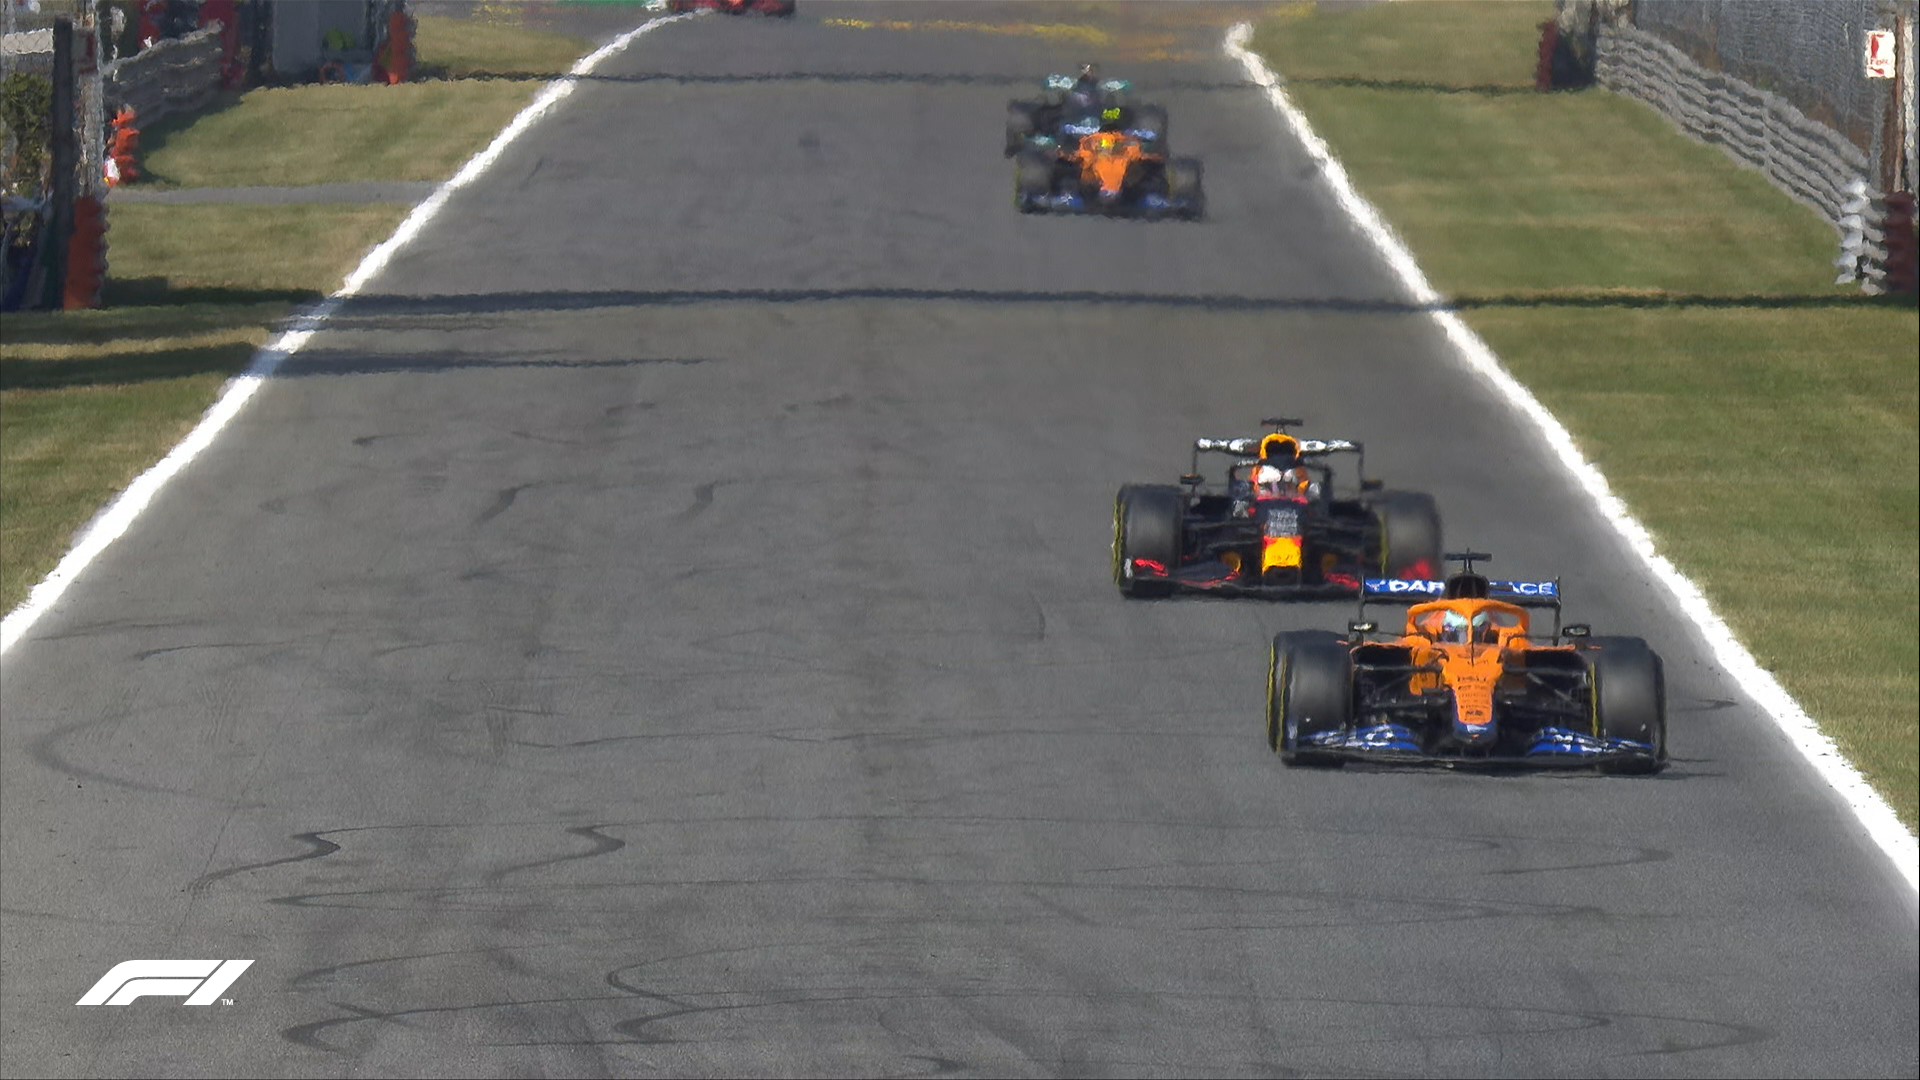 Daniel Ricciardo prowadzący w wyścigu